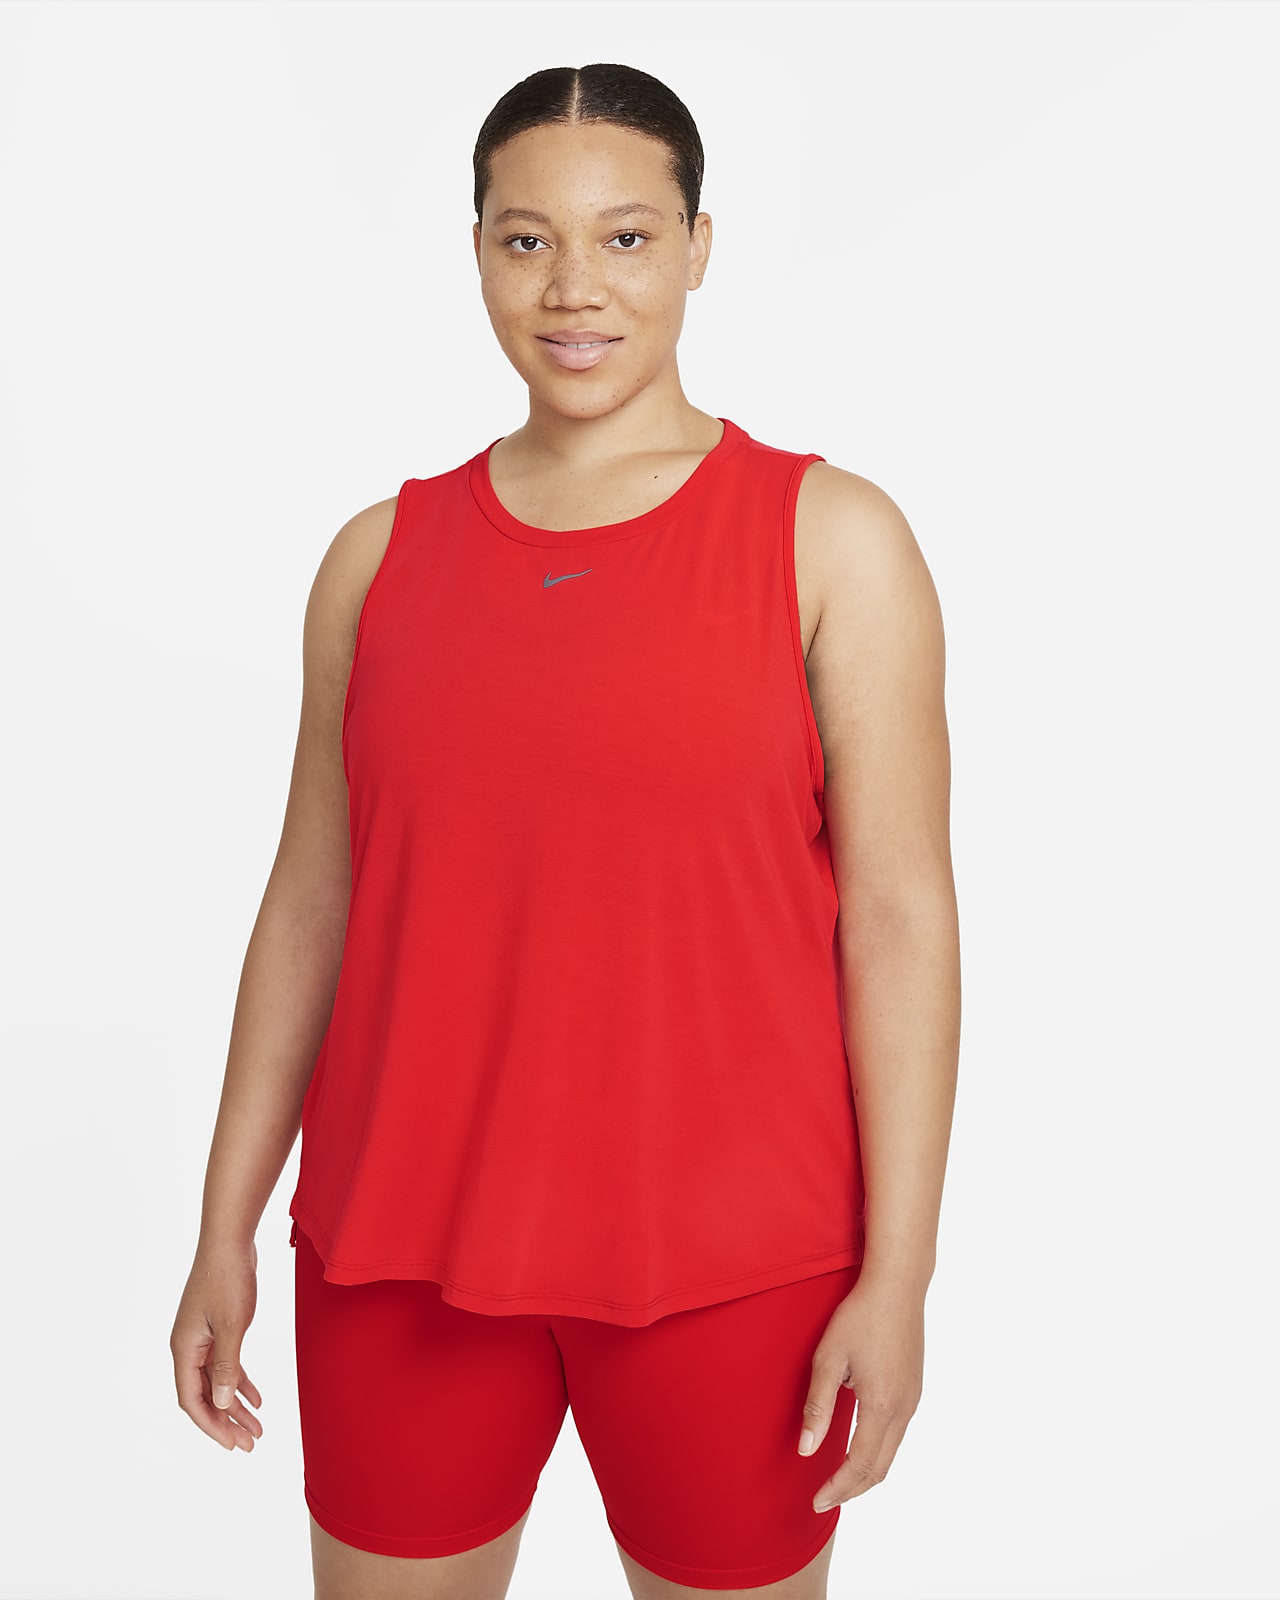 Nike Dri-FIT One Luxe Women's Standard Fit Tank (Plus Size)